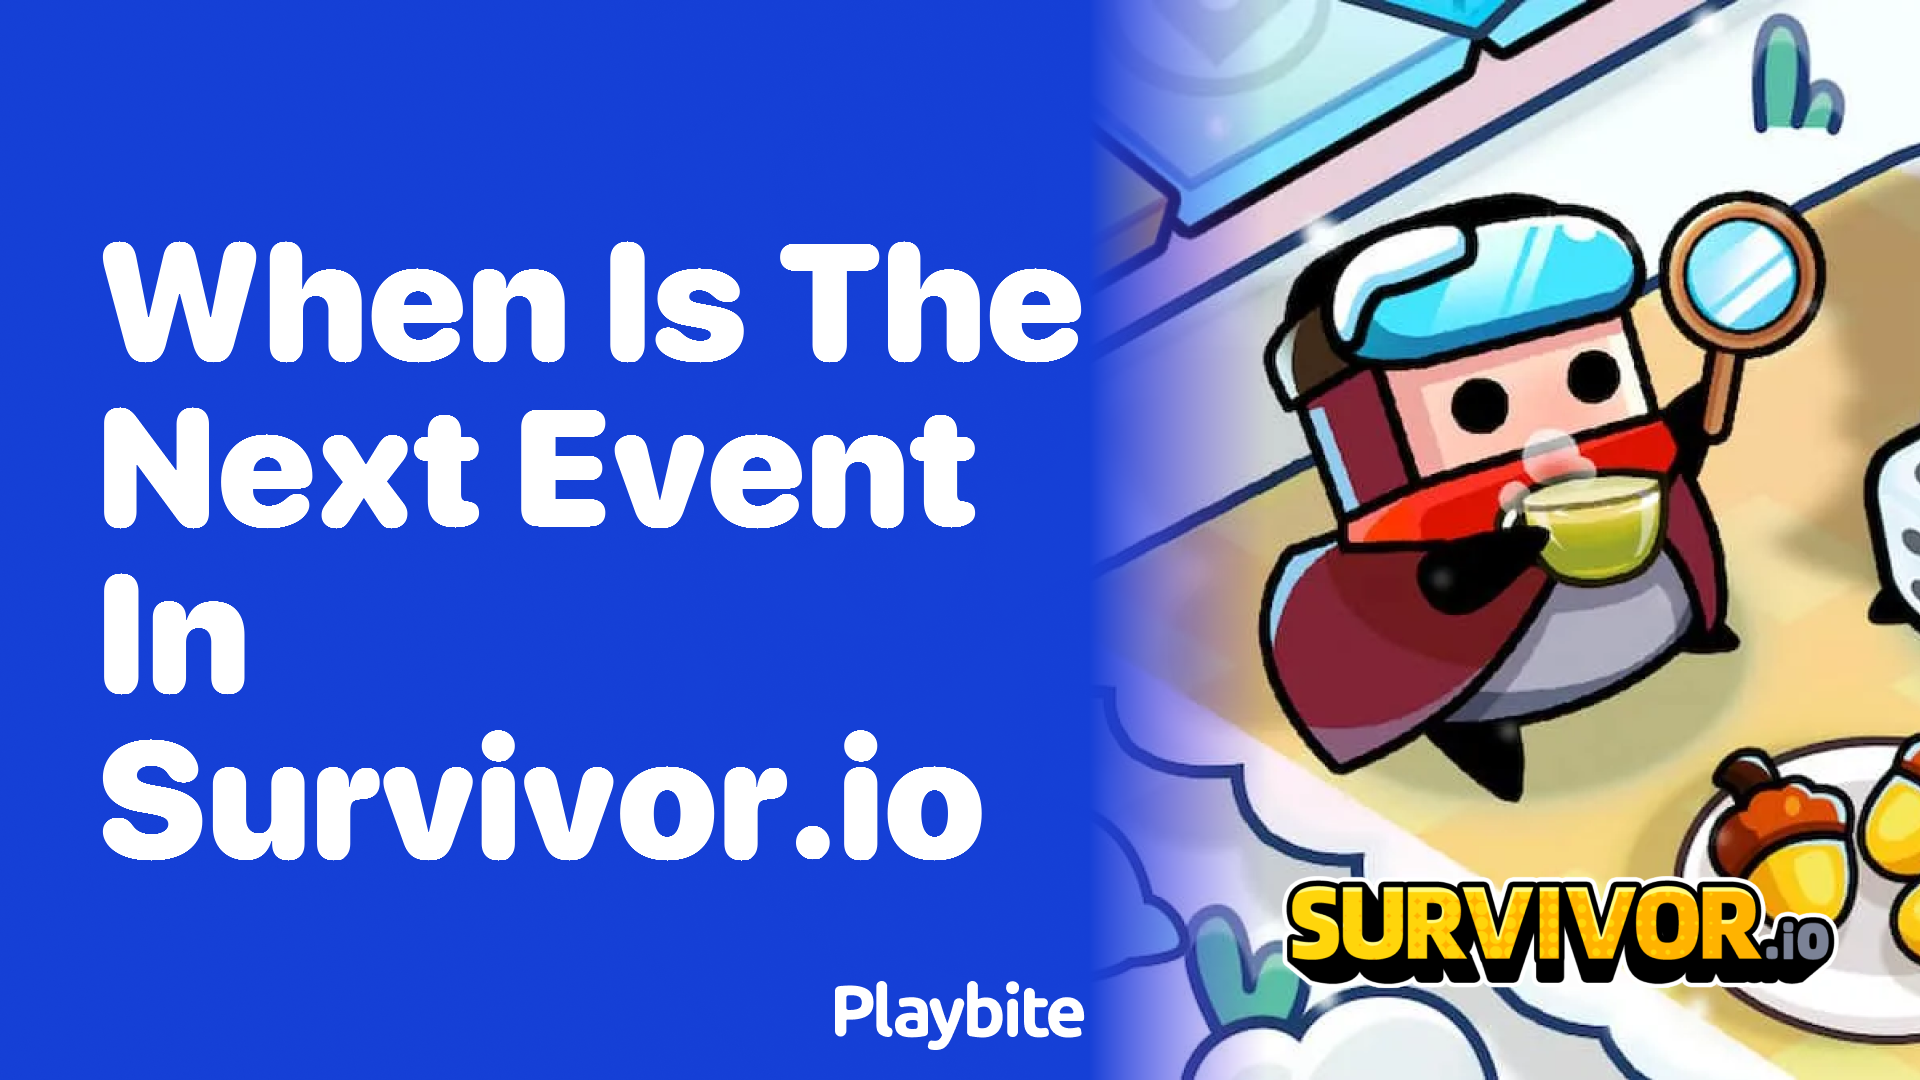 When Is the Next Event in Survivor.io?